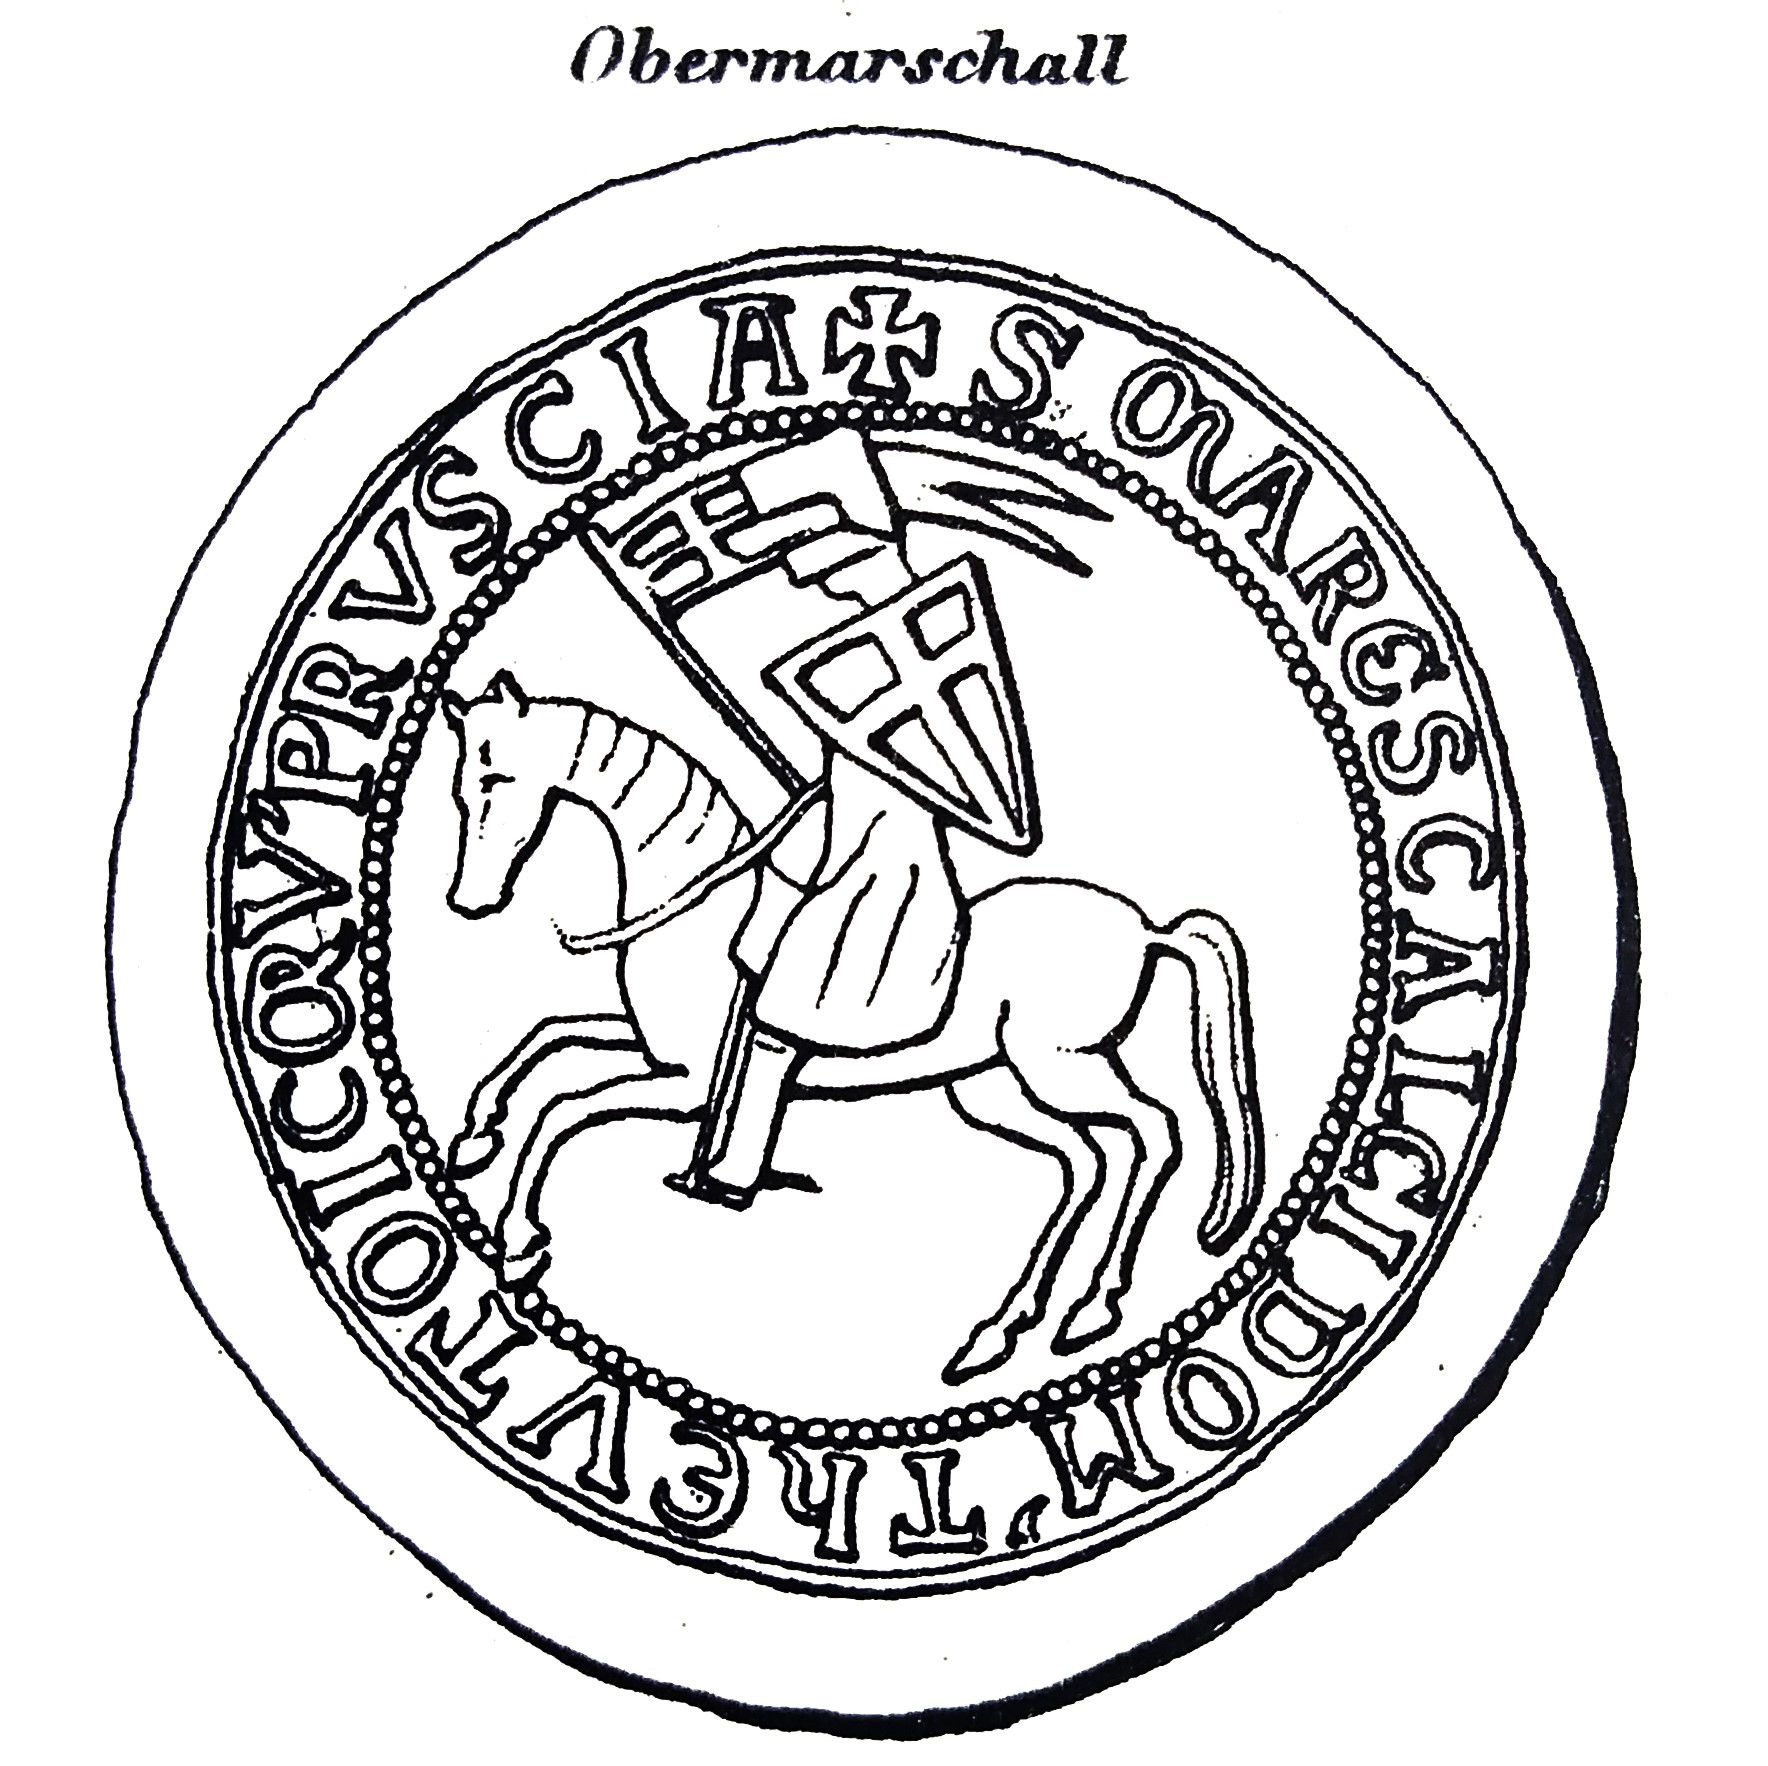 Das Bild zeigt eine schematische Darstellung des Siegels des Obersten Marschalls. Darauf abgebildet ist ein Ritter in Rüstung mit Schild und Fahnenlanze, der auf einem Pferd reitet.